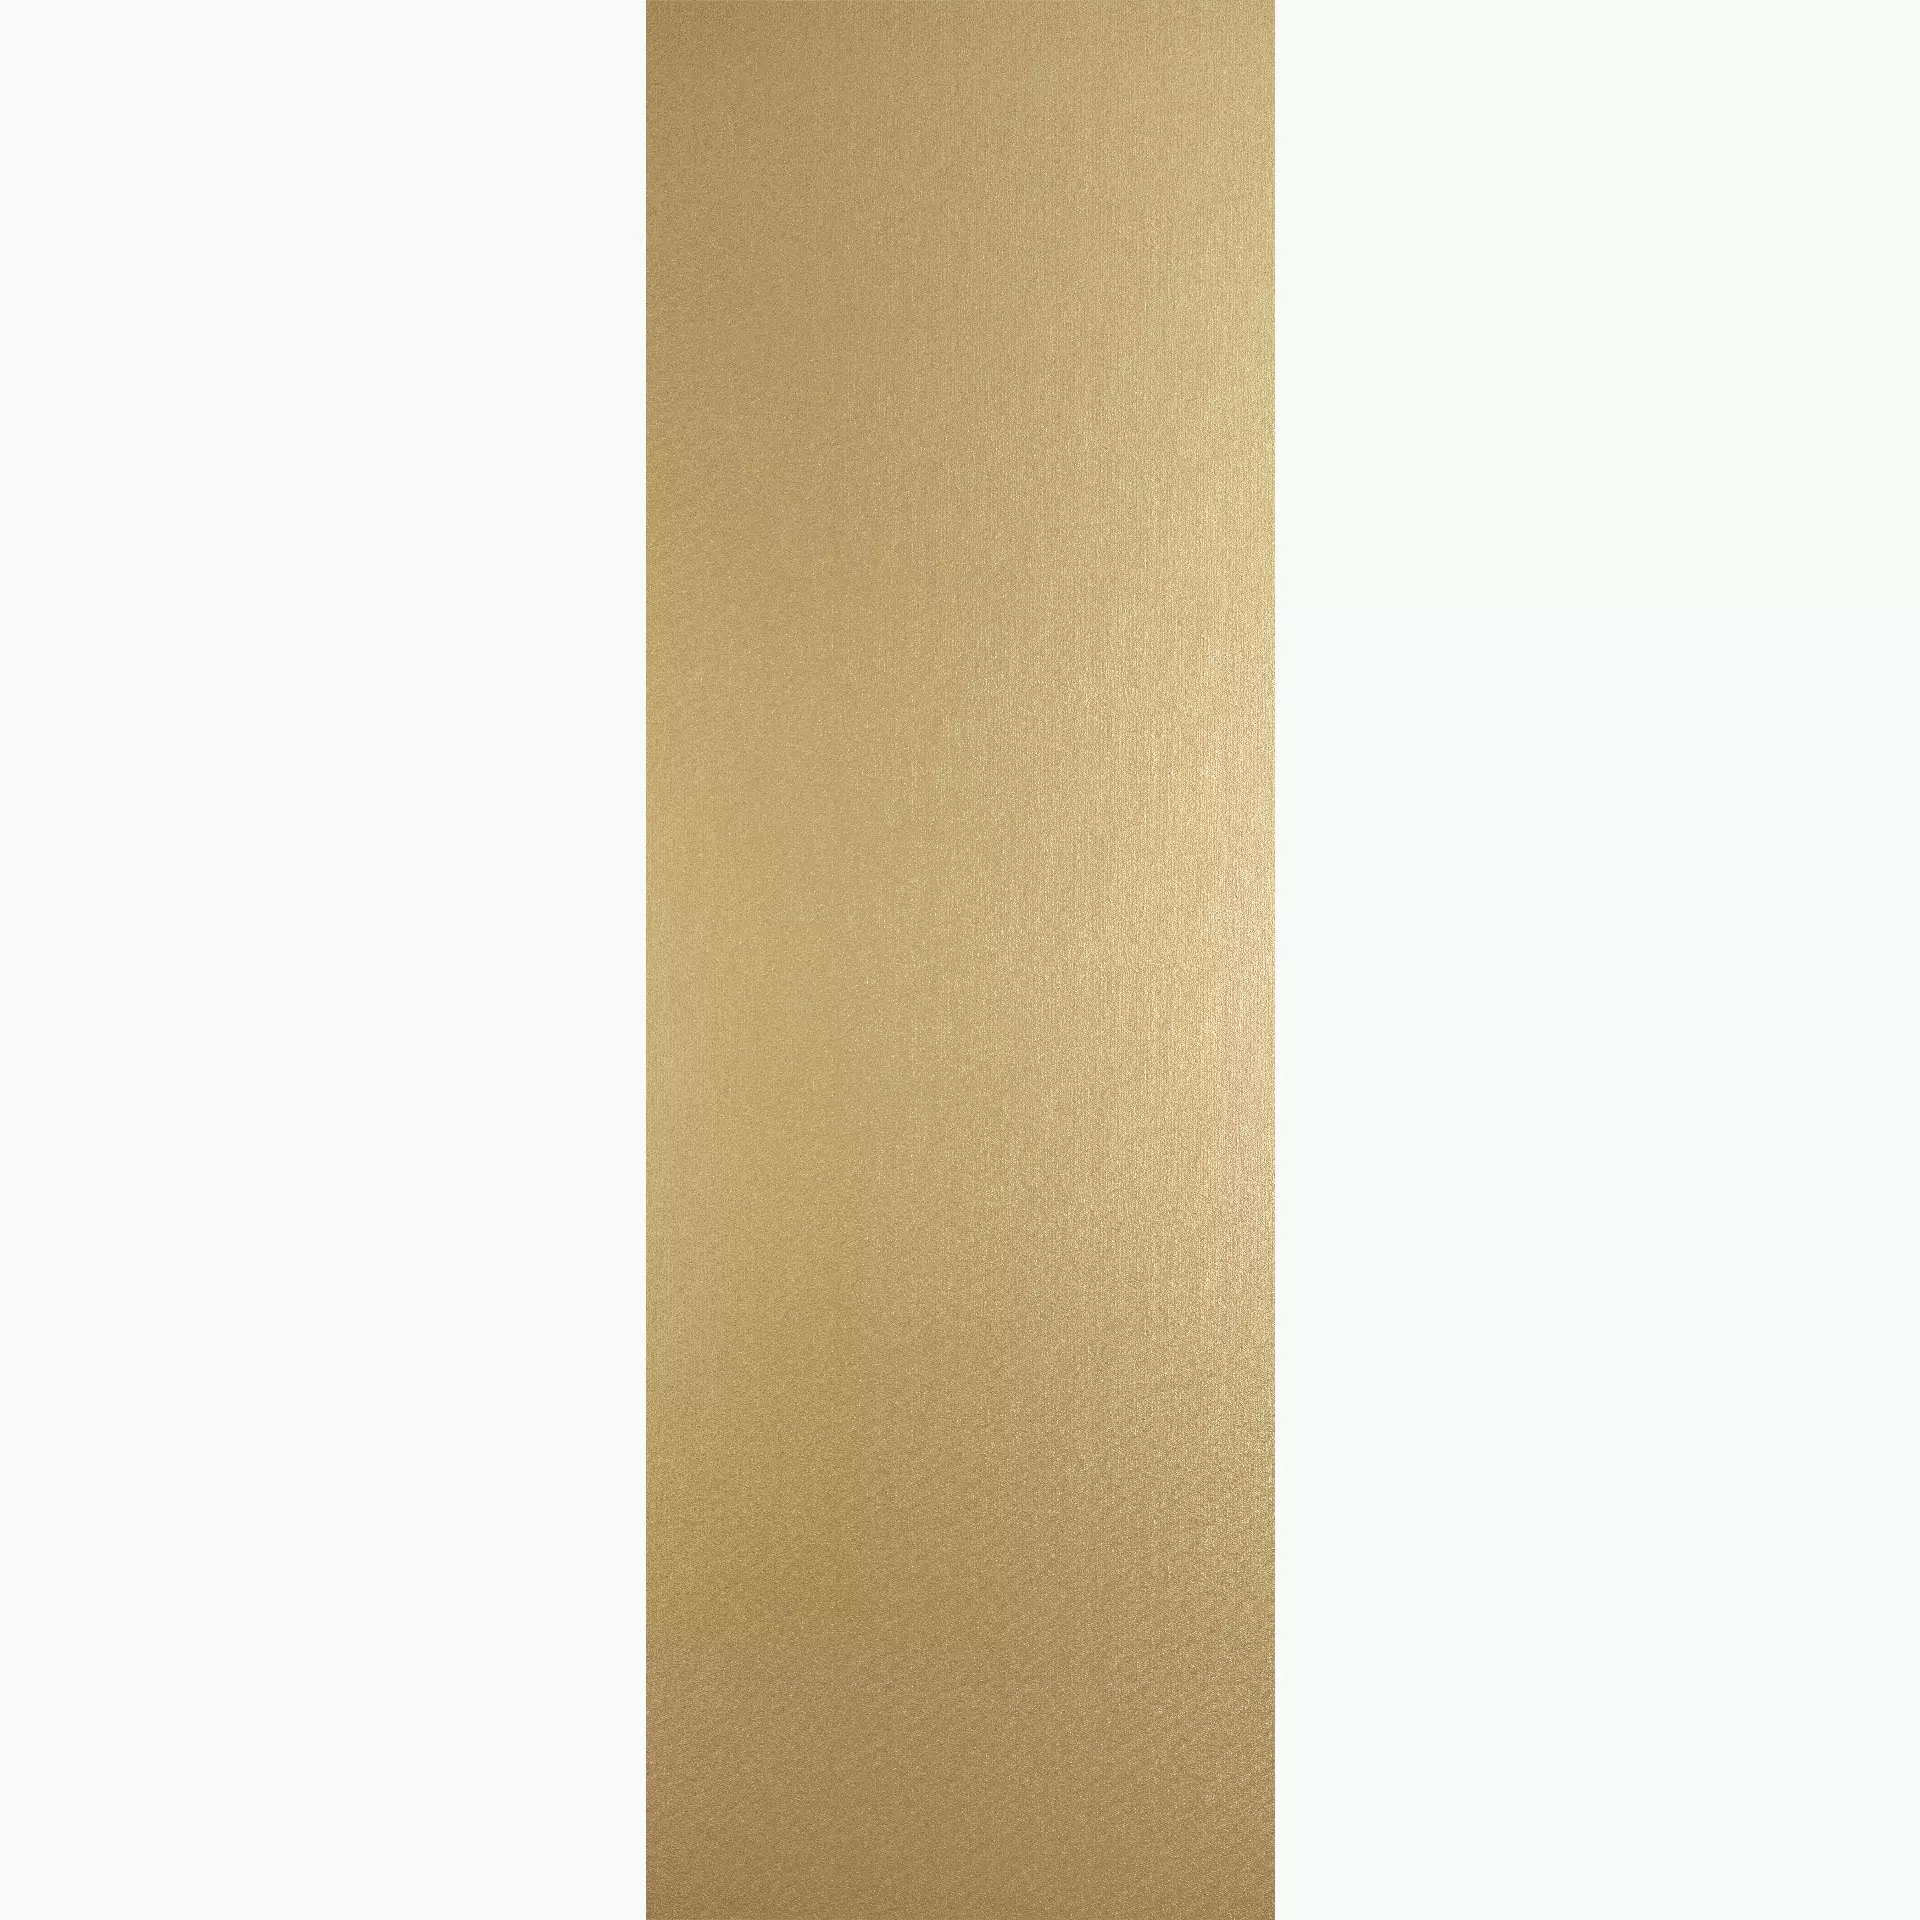 Cottodeste Kerlite Wonderwall Golden Slab Struttura Decor EK7WP20 100x300cm 3,5mm